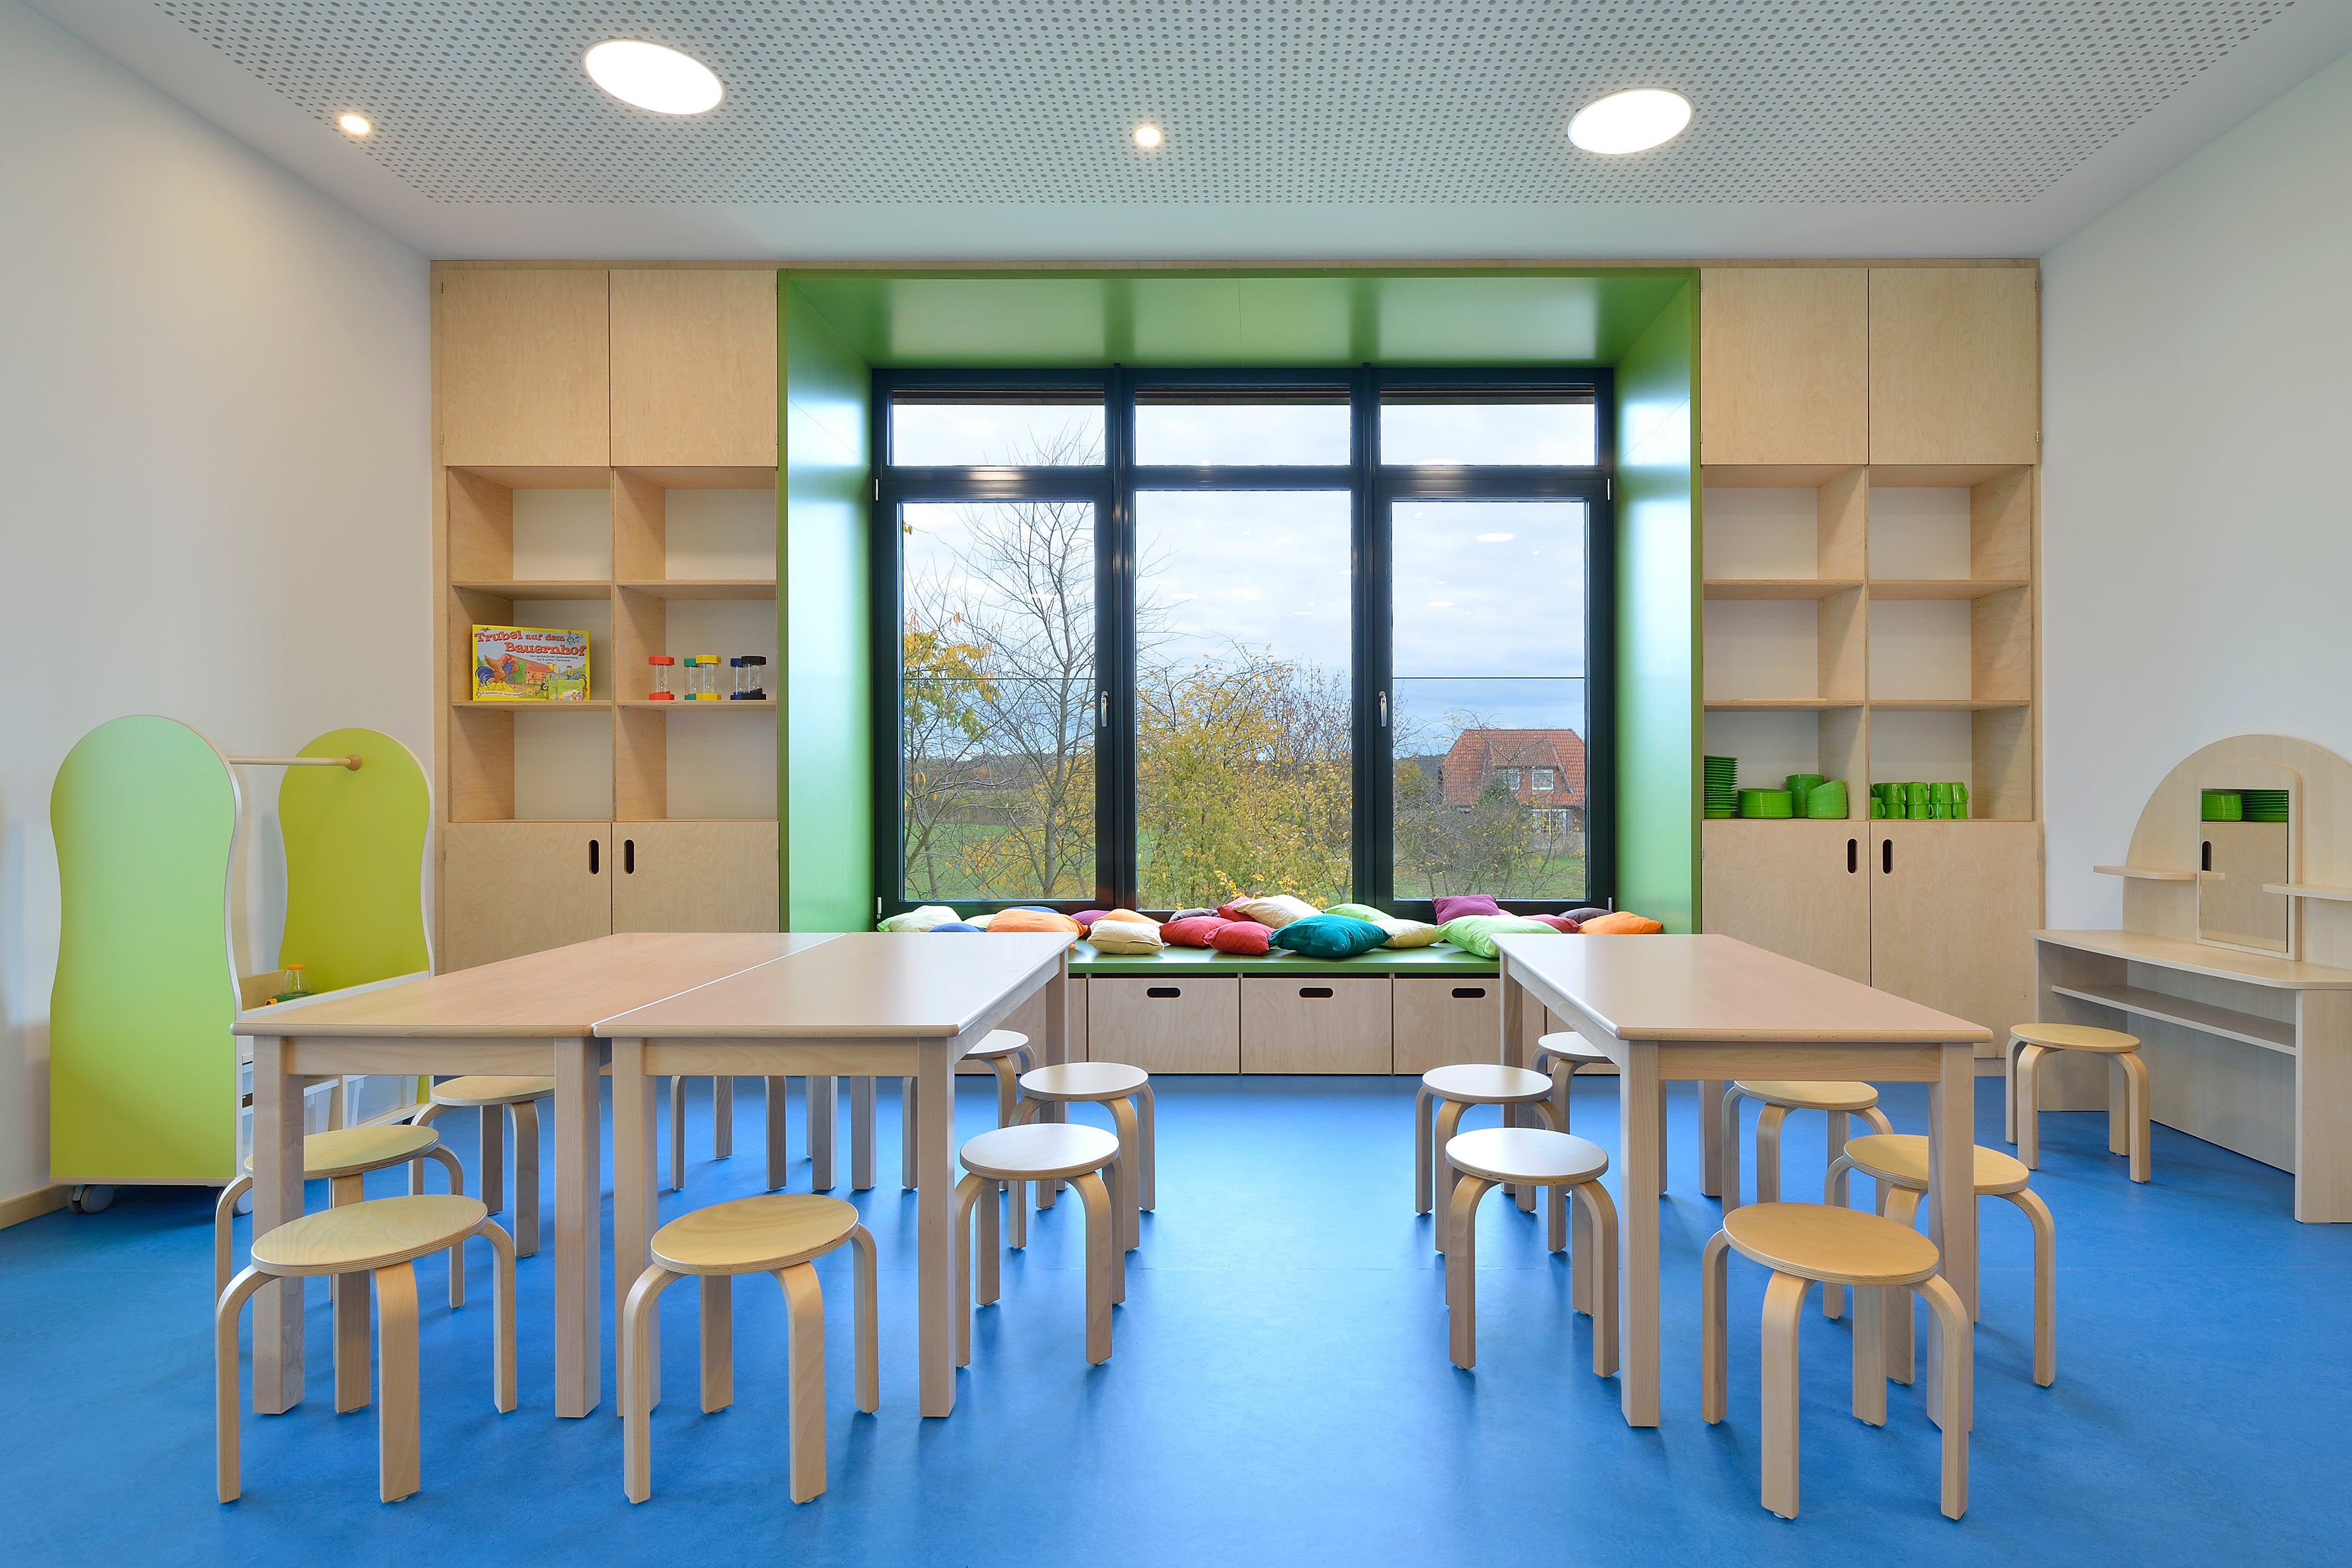 Table de jardin d'enfants - rectangulaire en bois massif ǀ disponible immédiatement